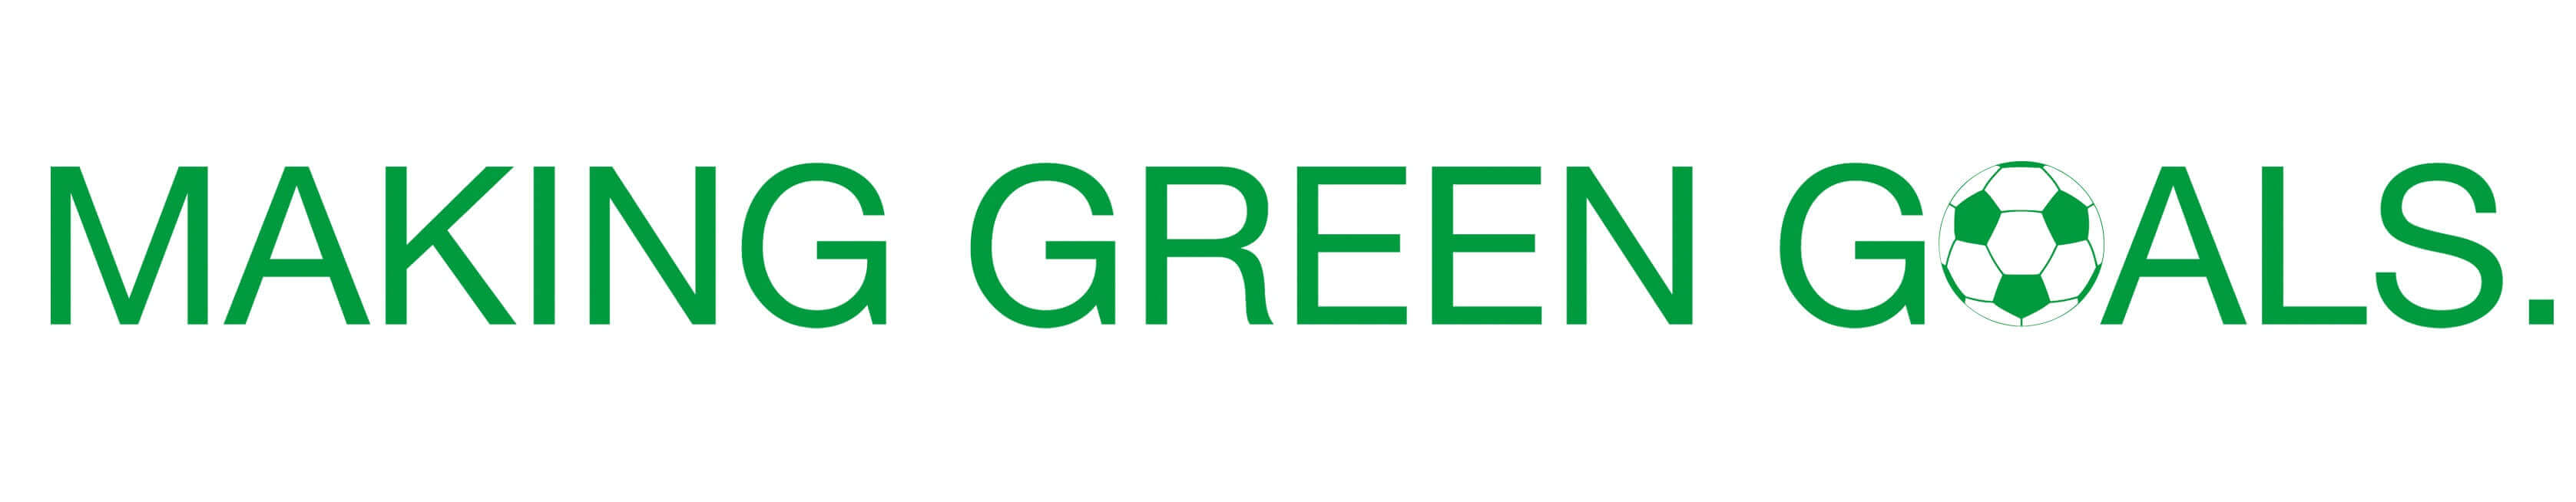 Making-green-goals_schriftzug